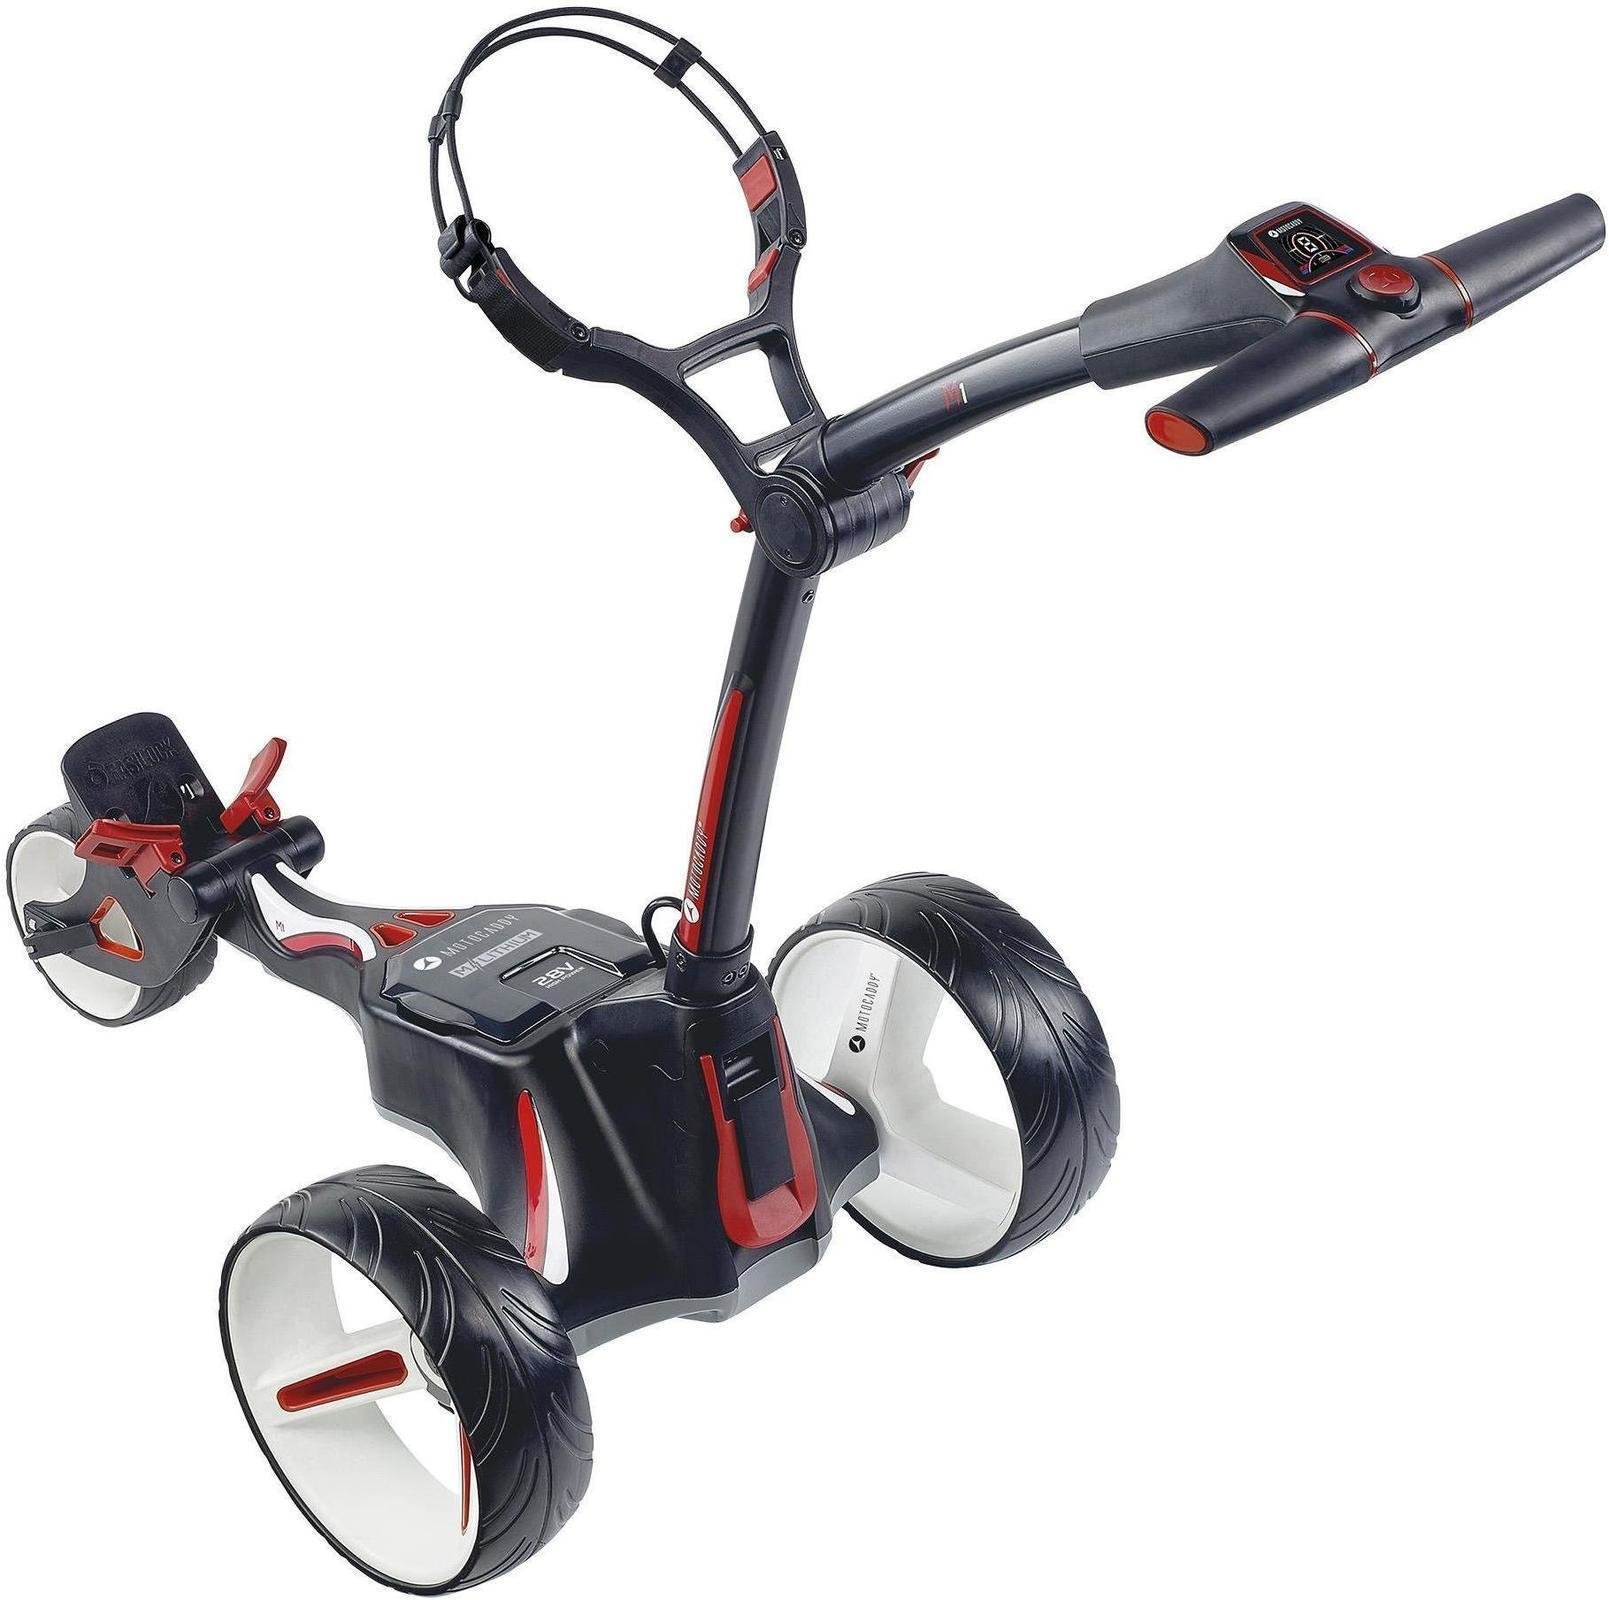 Chariot de golf électrique Motocaddy M1 2018 Black Chariot de golf électrique